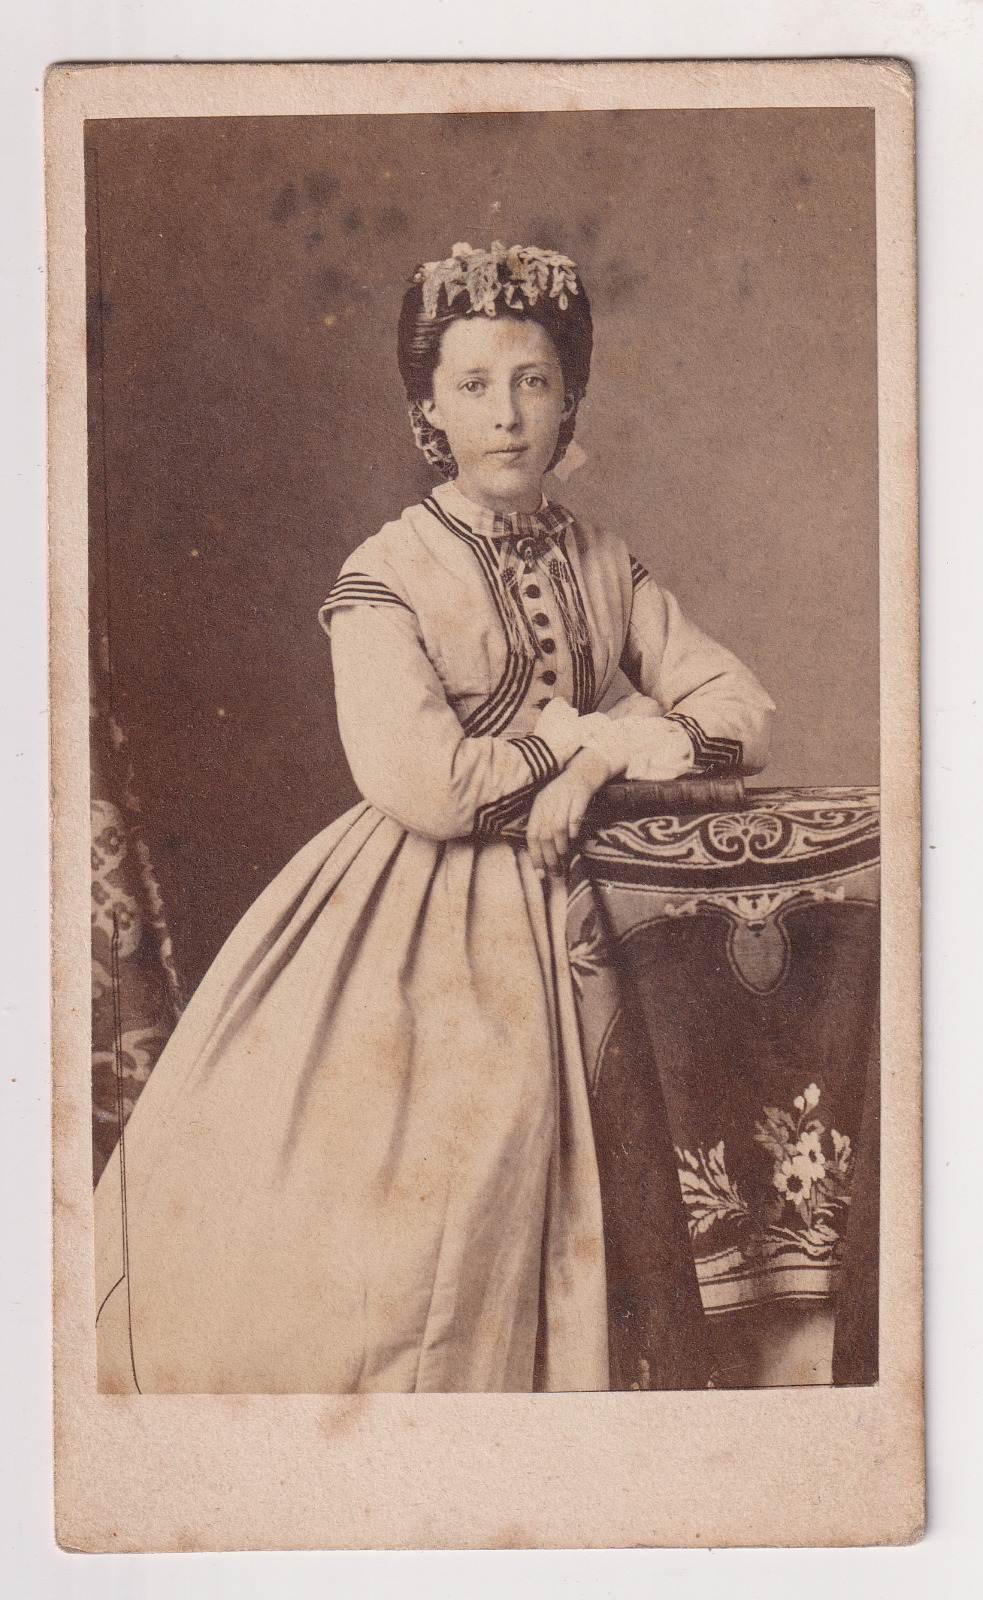 Herbert à Beauvais CDV - Portrait of a Young Woman - Vintage Print c.1865